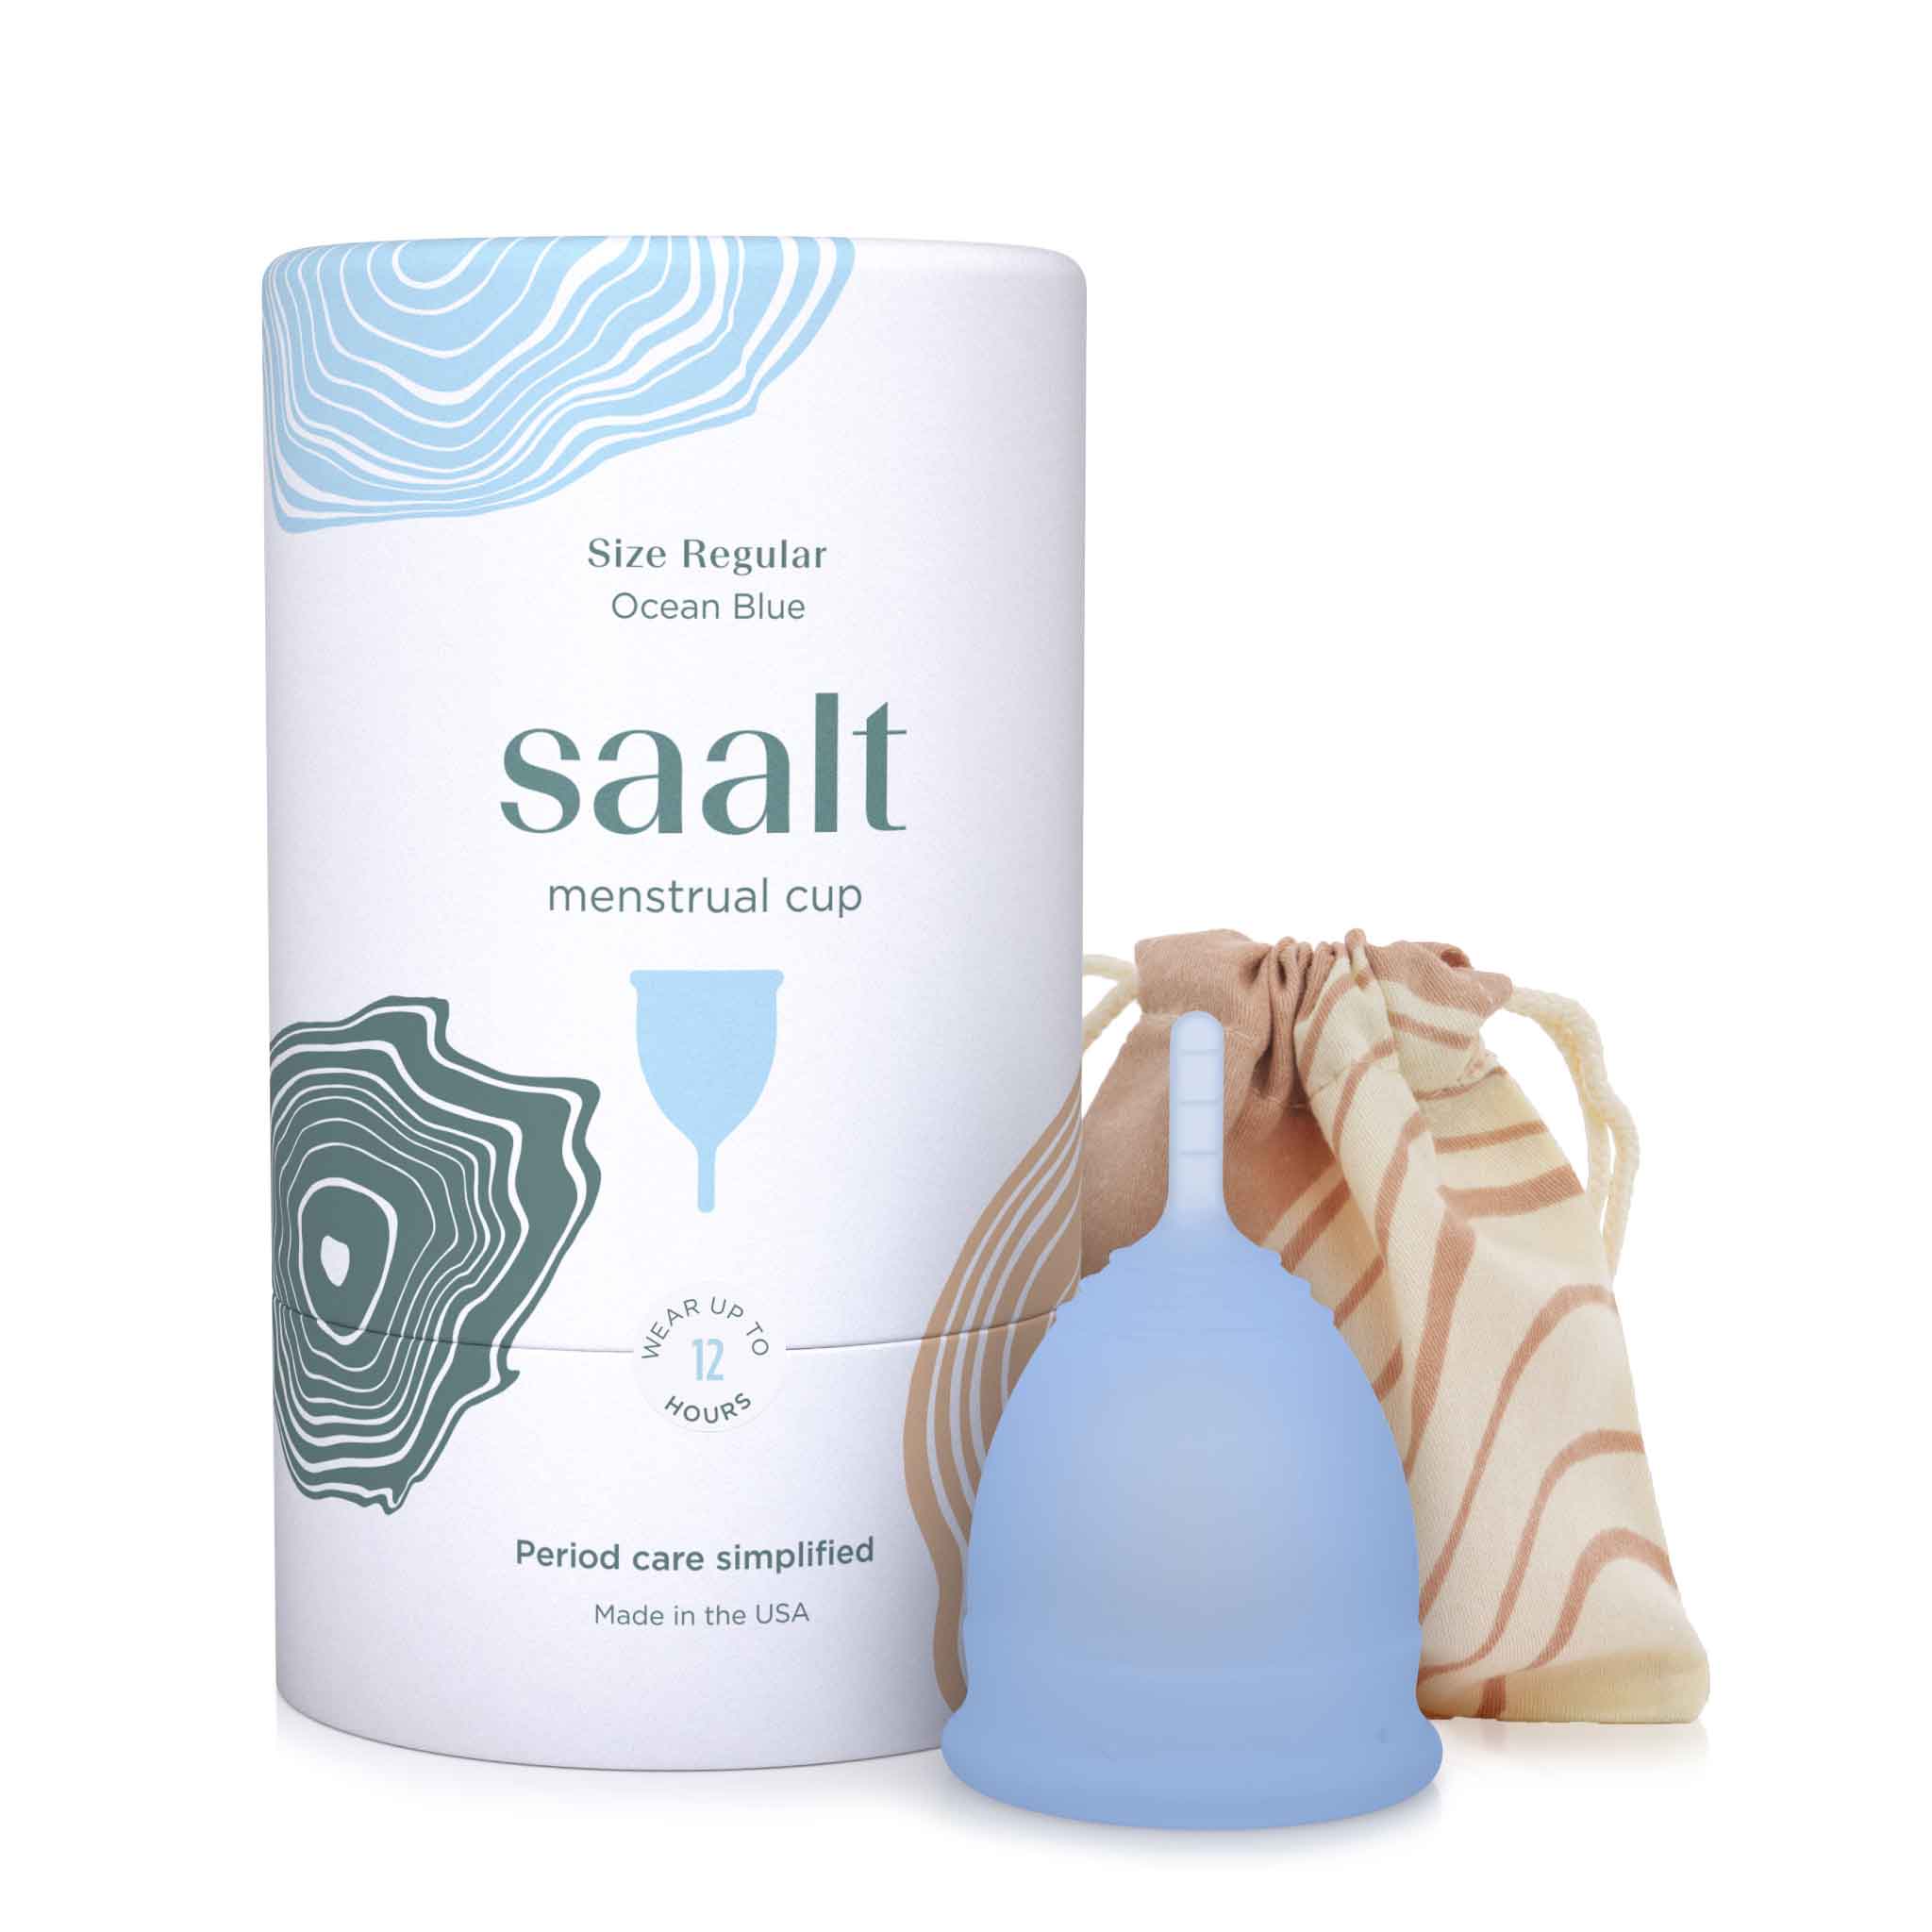 Saalt Period Underwear Detergent - The New Best Way to Wash Your Saalt